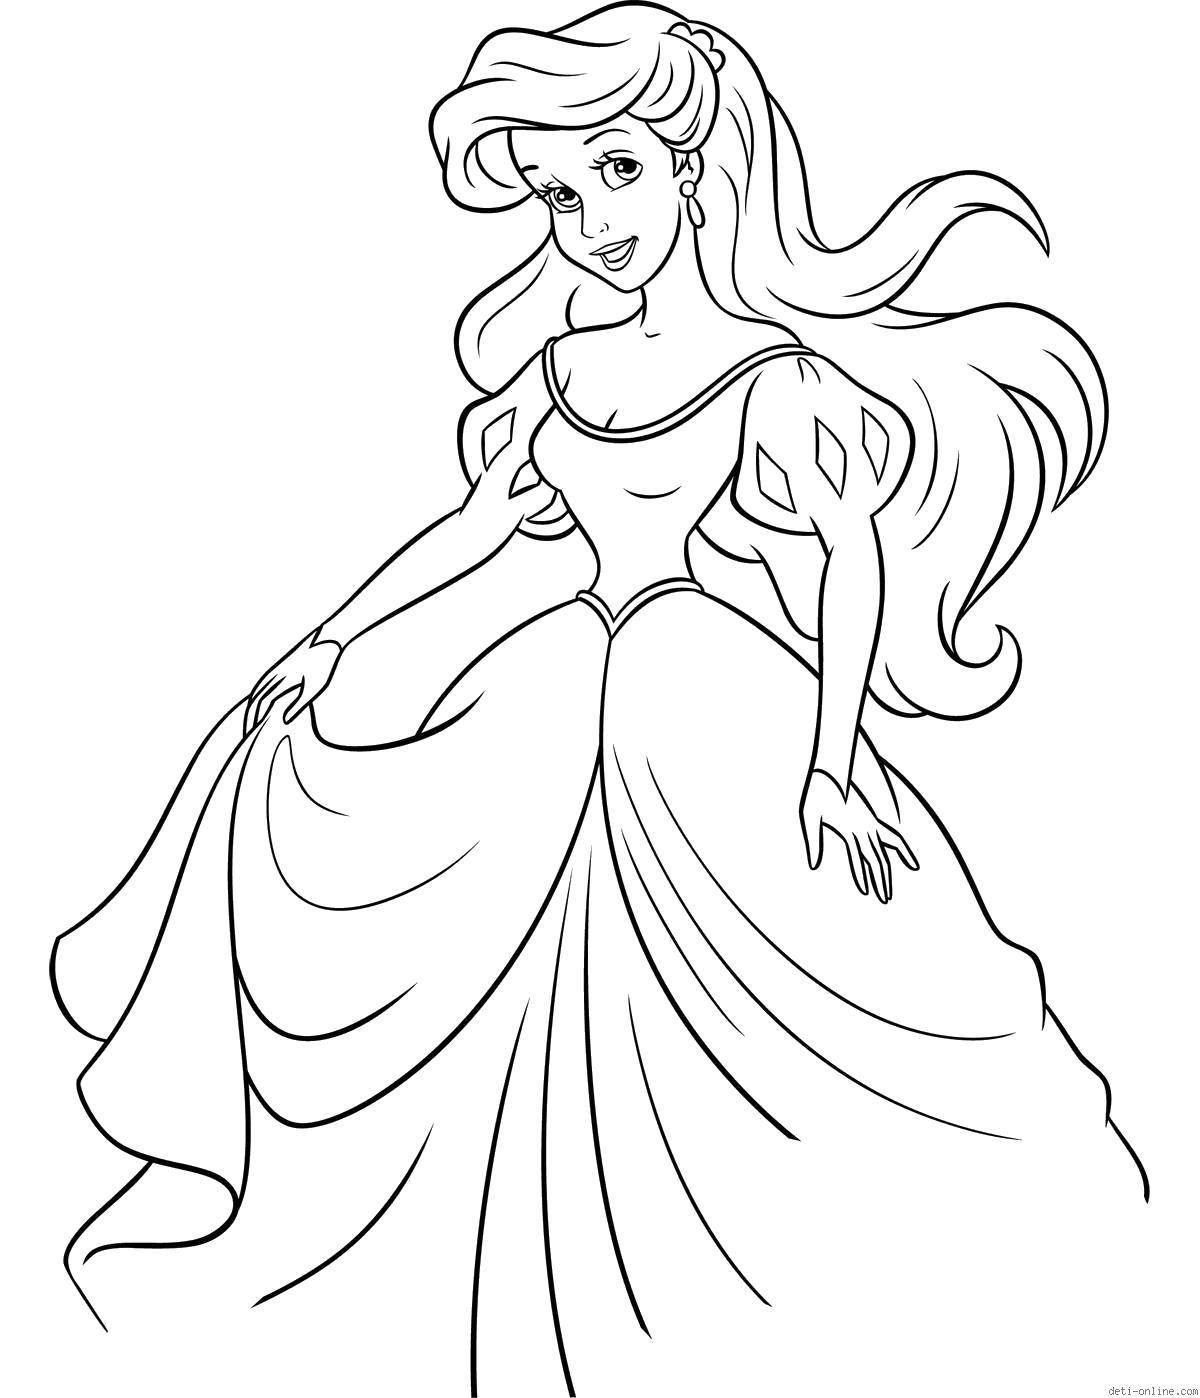 Раскраски по мультфильму русалочка для девочек  Ариэль в прекрасном платье